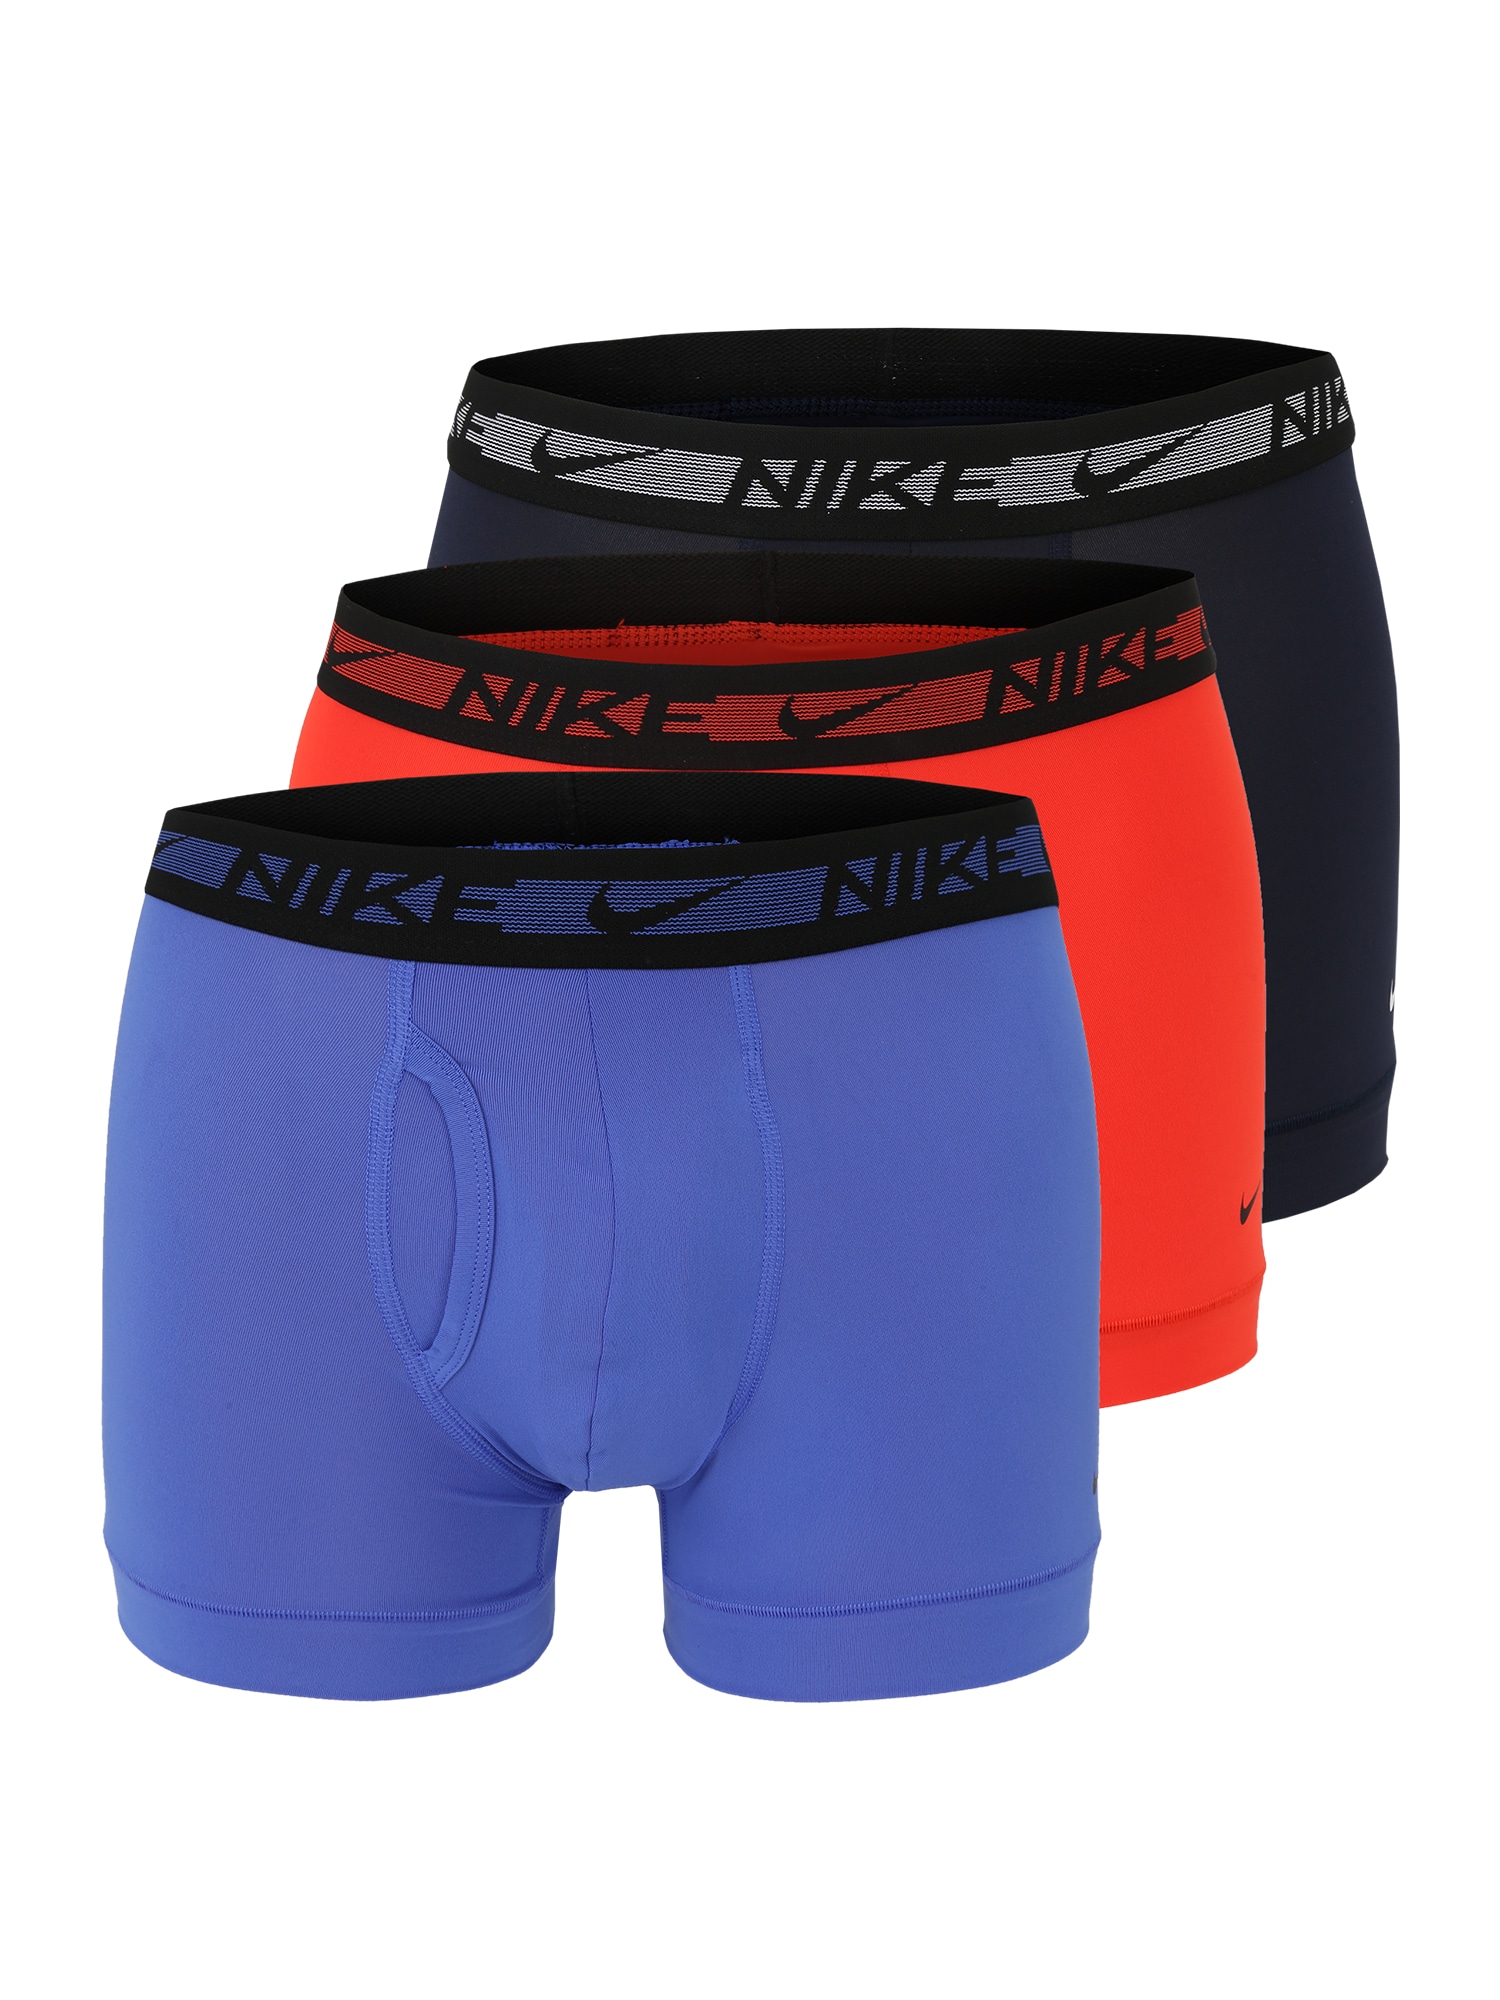 NIKE Sport alsónadrágok  fekete / éjkék / narancsvörös / kék / fehér